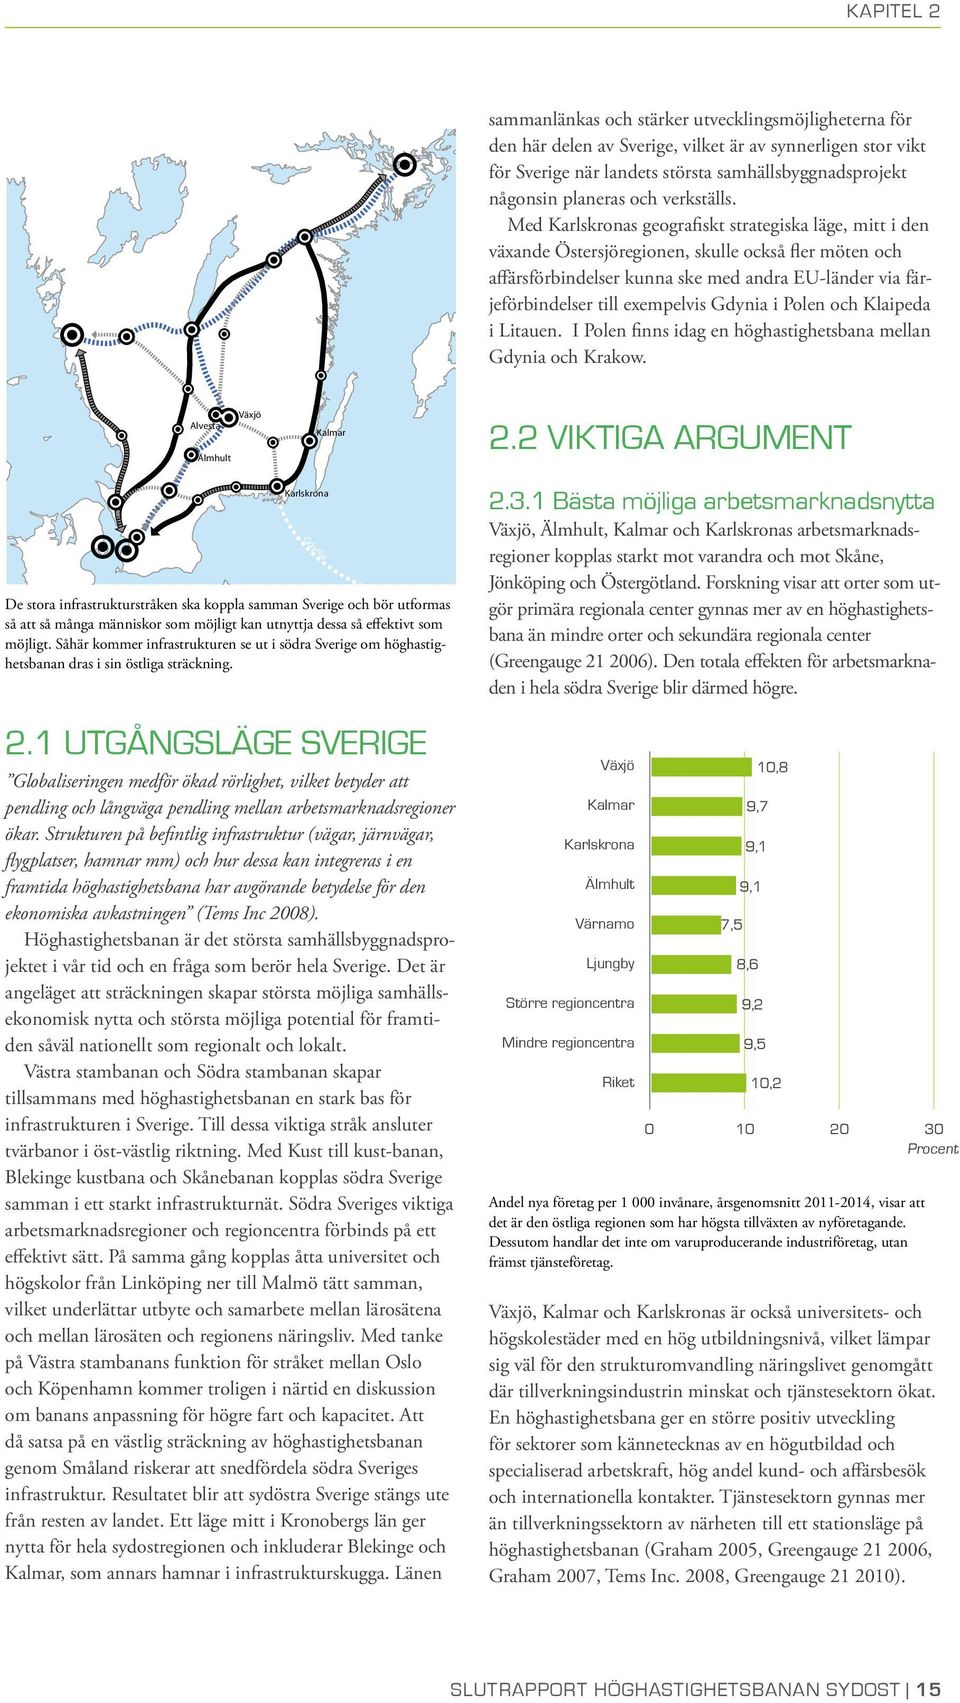 Med Karlskronas geografiskt strategiska läge, mitt i den växande Östersjöregionen, skulle också fler möten och affärsförbindelser kunna ske med andra EU-länder via färjeförbindelser till exempelvis